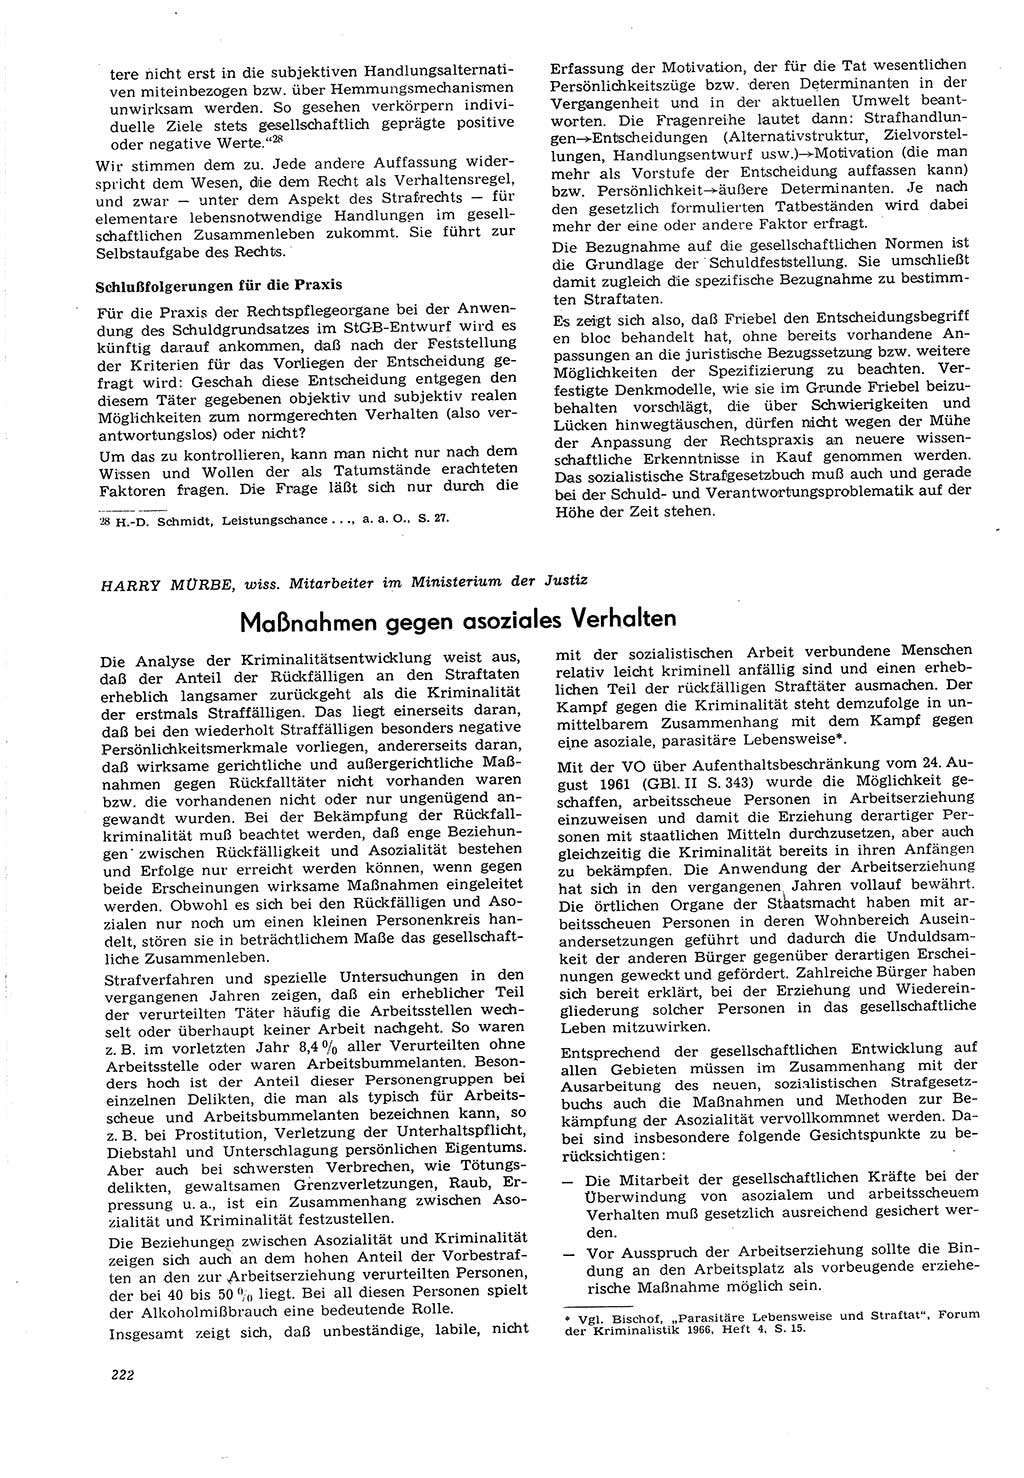 Neue Justiz (NJ), Zeitschrift für Recht und Rechtswissenschaft [Deutsche Demokratische Republik (DDR)], 21. Jahrgang 1967, Seite 222 (NJ DDR 1967, S. 222)